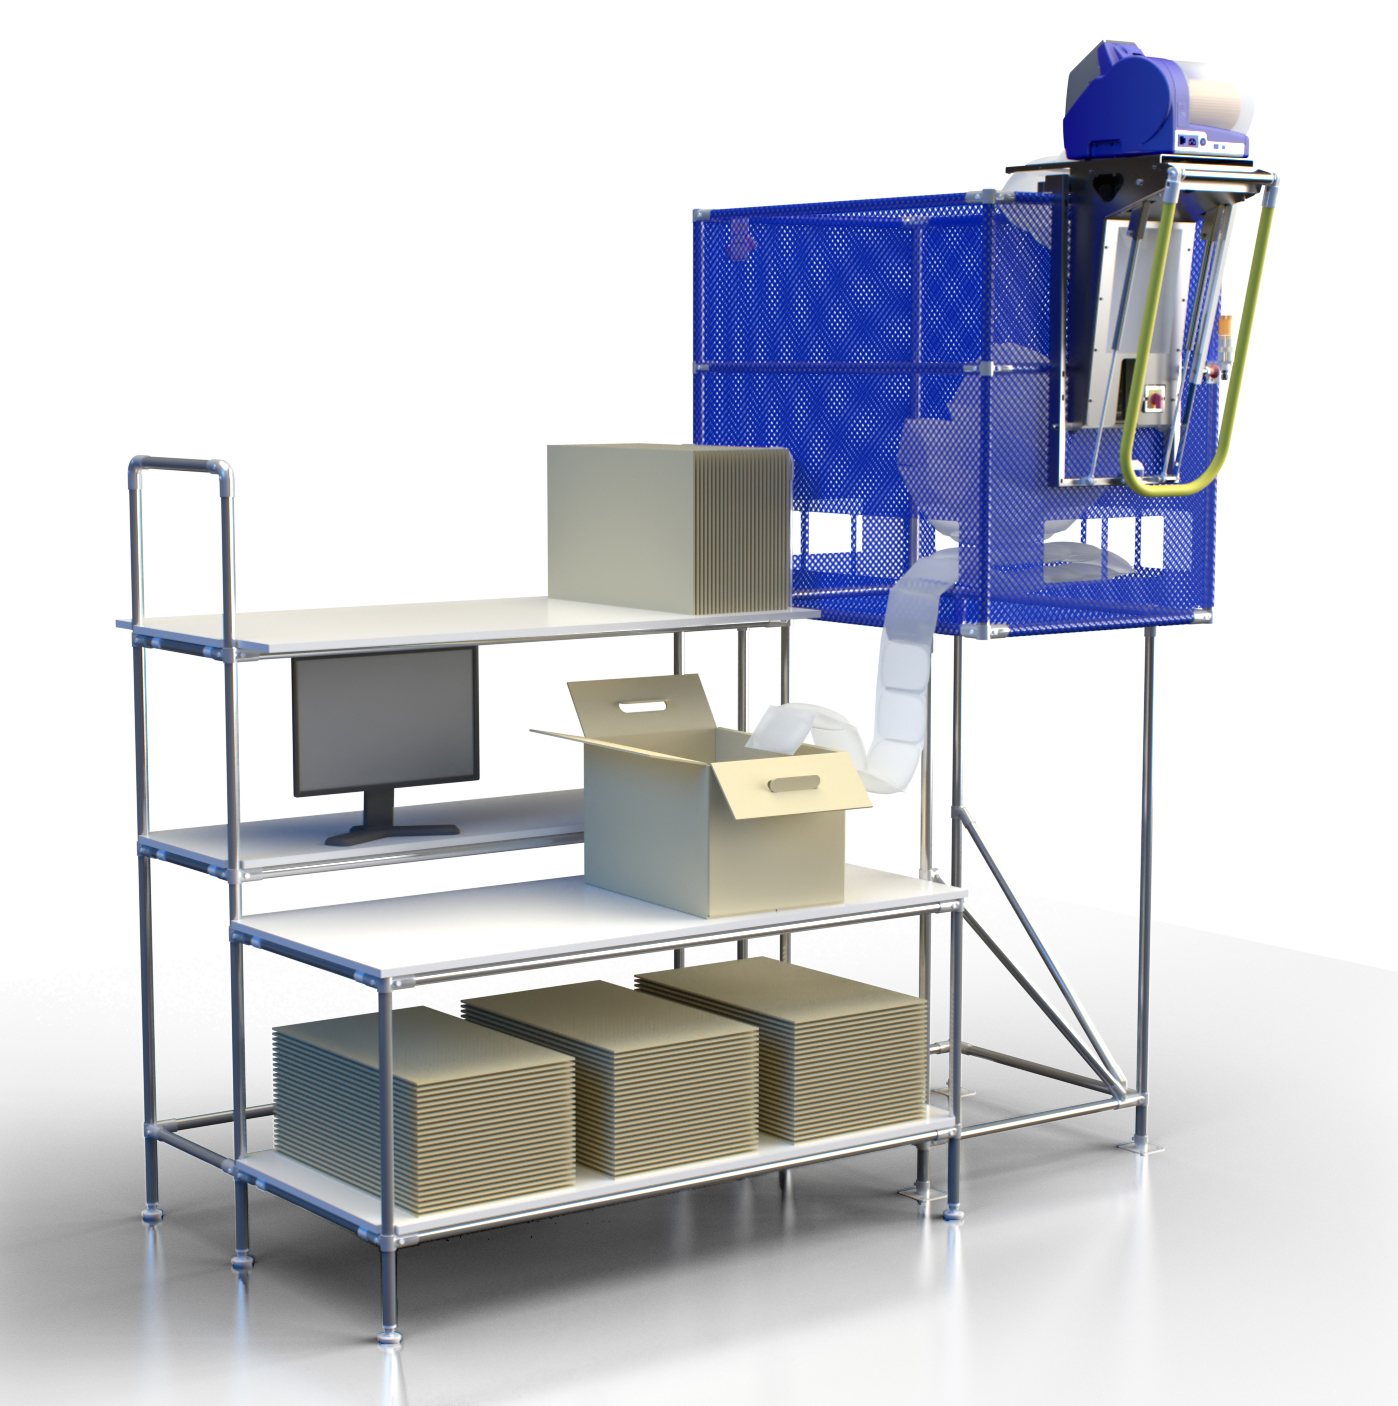 Top Fill hängende Systeme Ideal für alle geeignet, die rund um ihre Verpackungsstationen Platz sparen wollen.